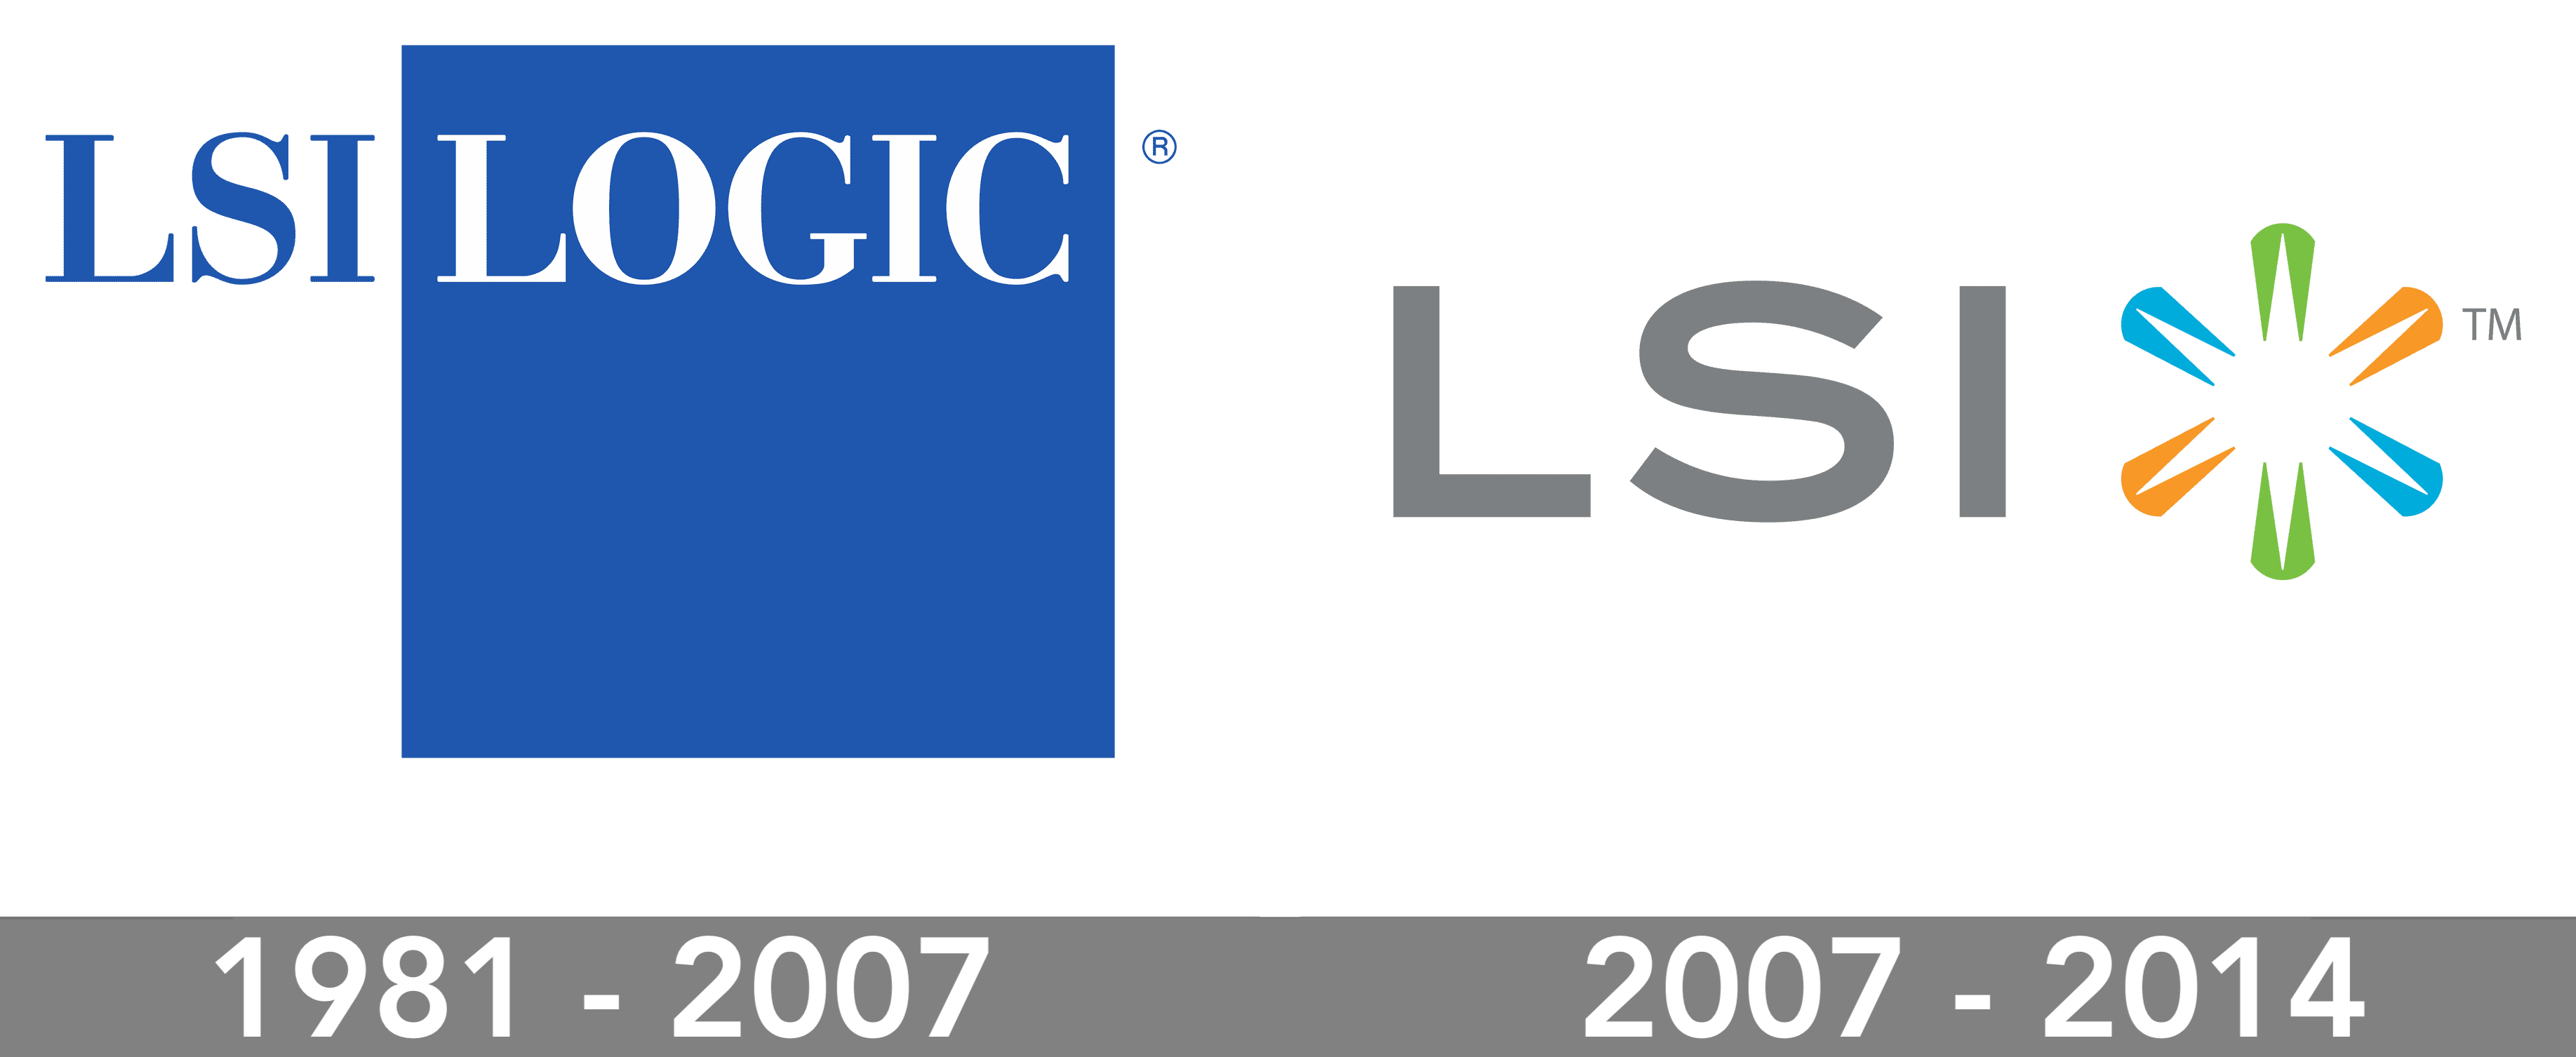 LSI logos